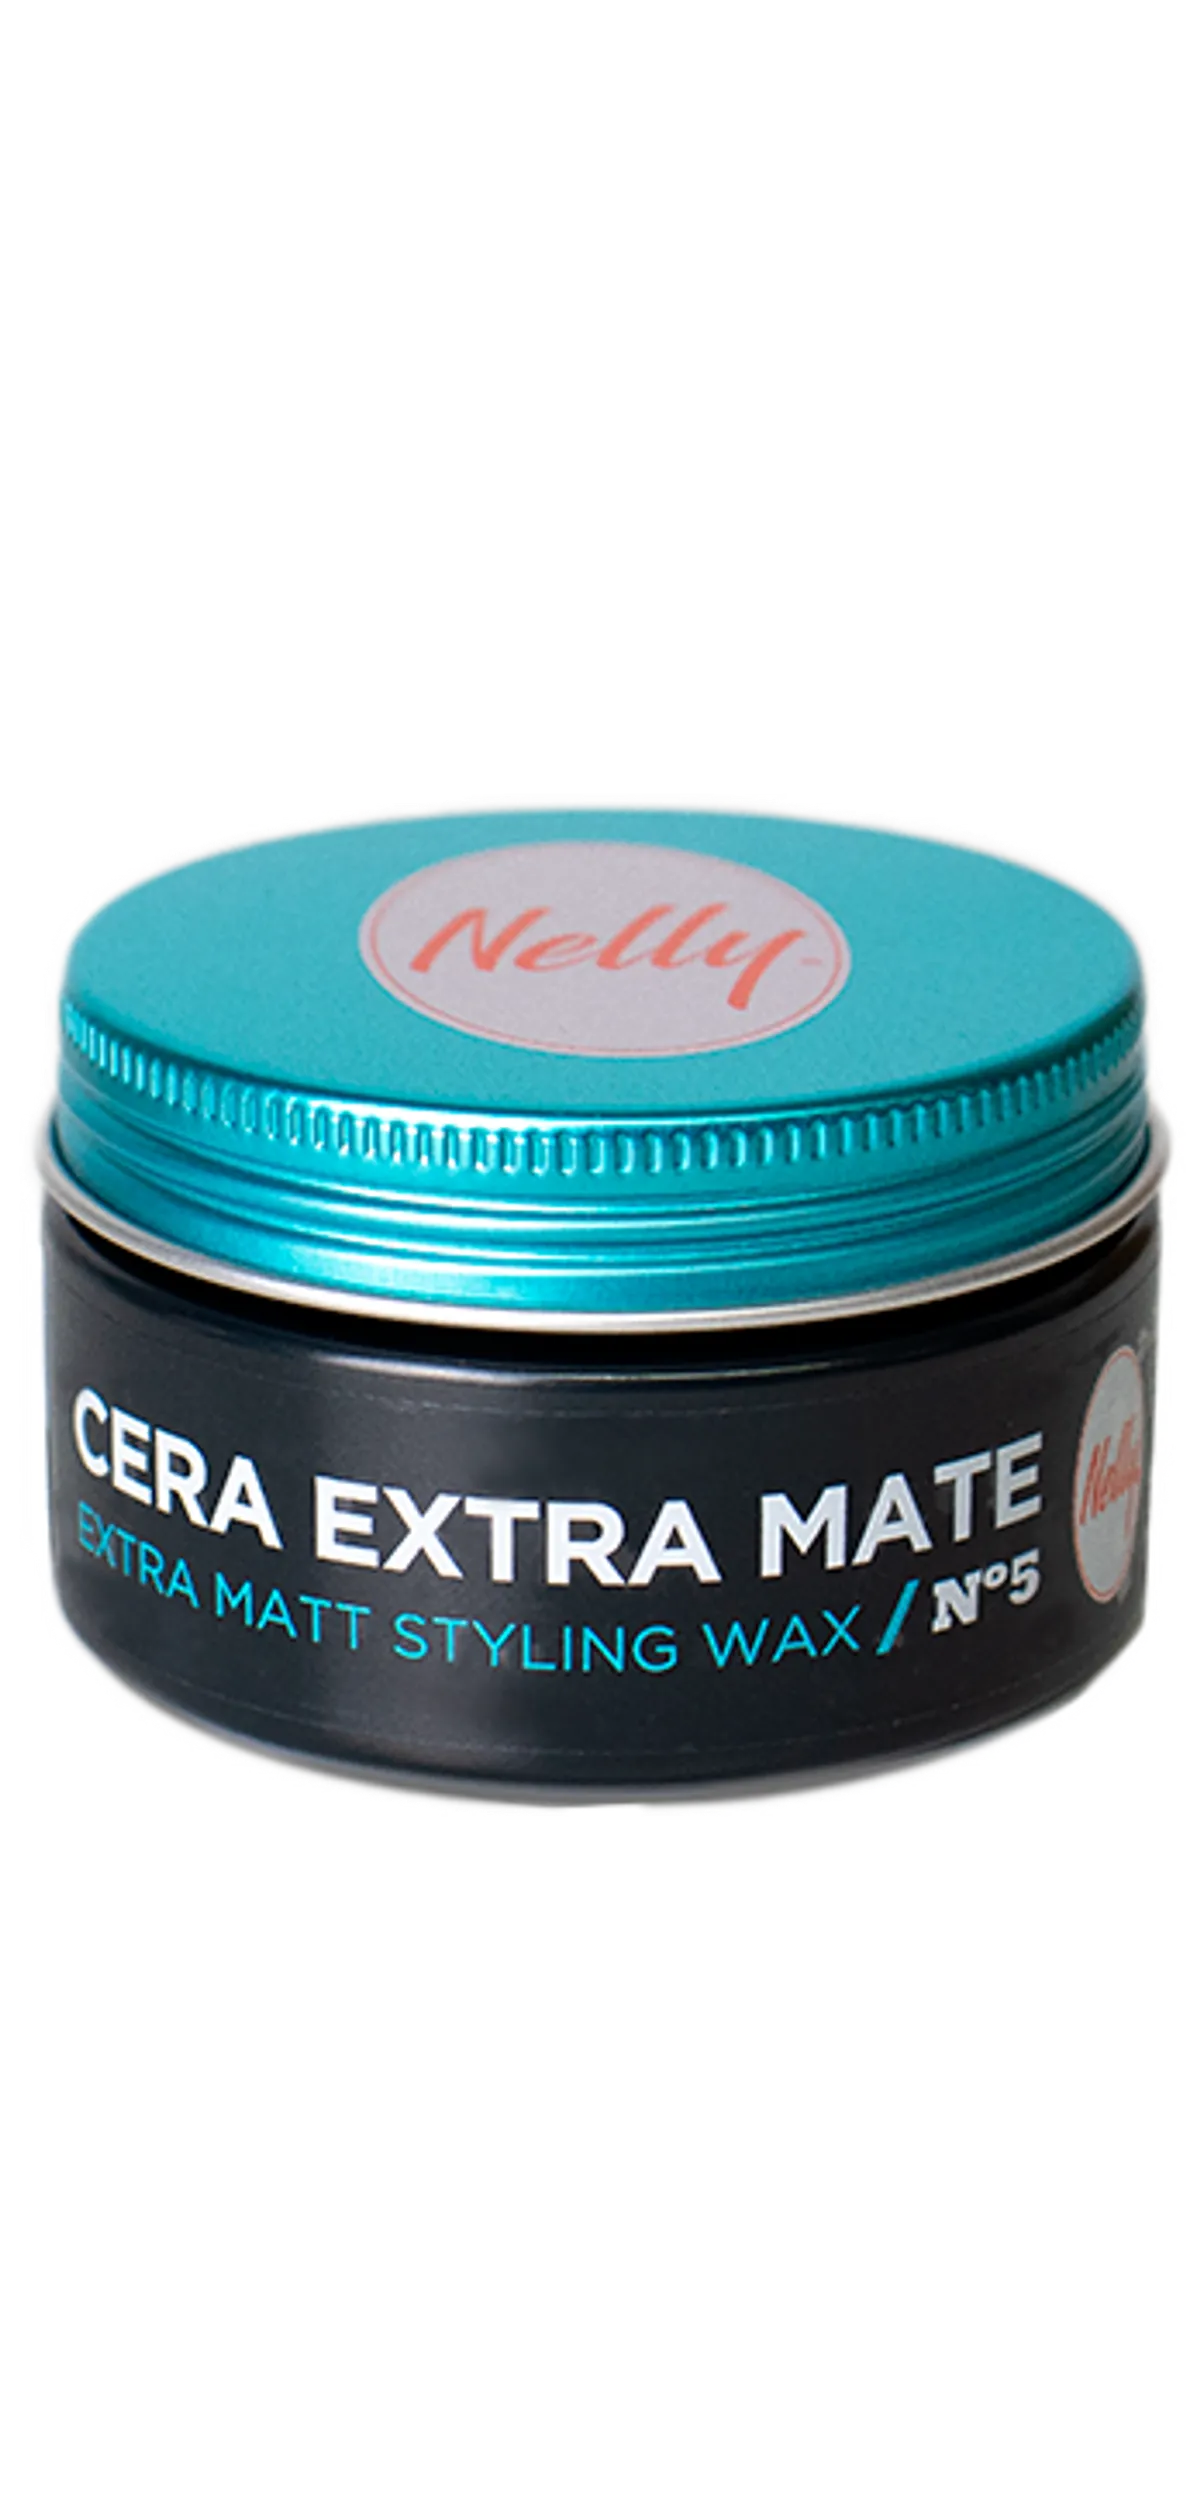 Extra Matt Styling Wax Nº5